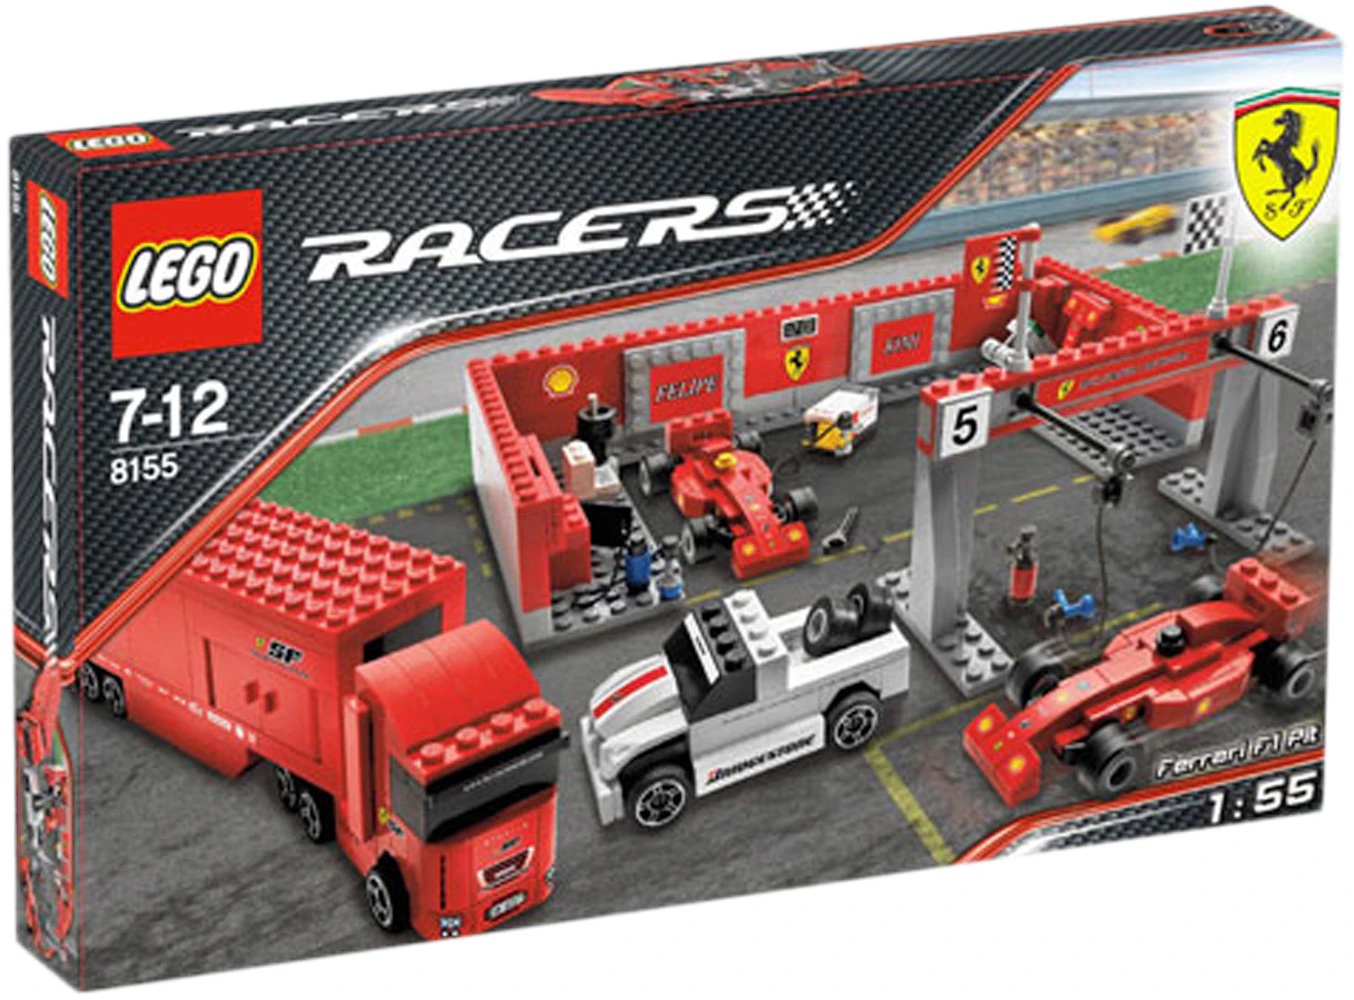 LEGO Racers Ferrari F1 Pit Set 8155 - US